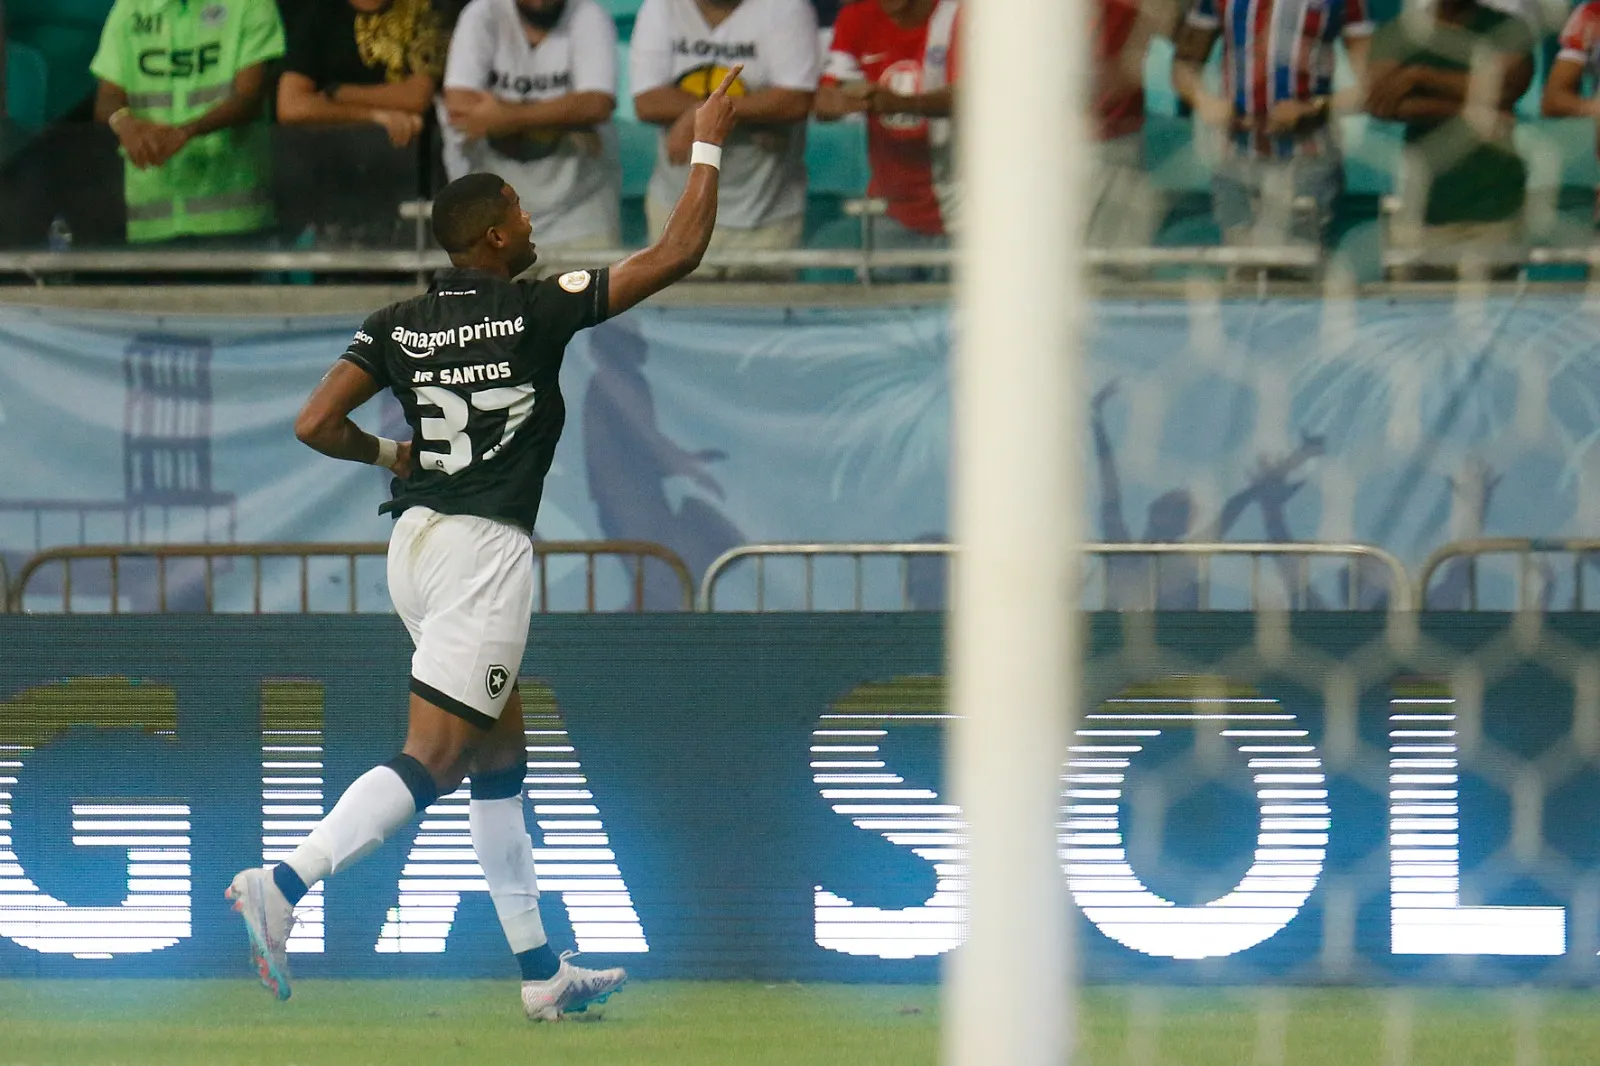 Com gols de Júnior Santos e Tchê Tchê, o Glorioso levou a melhor